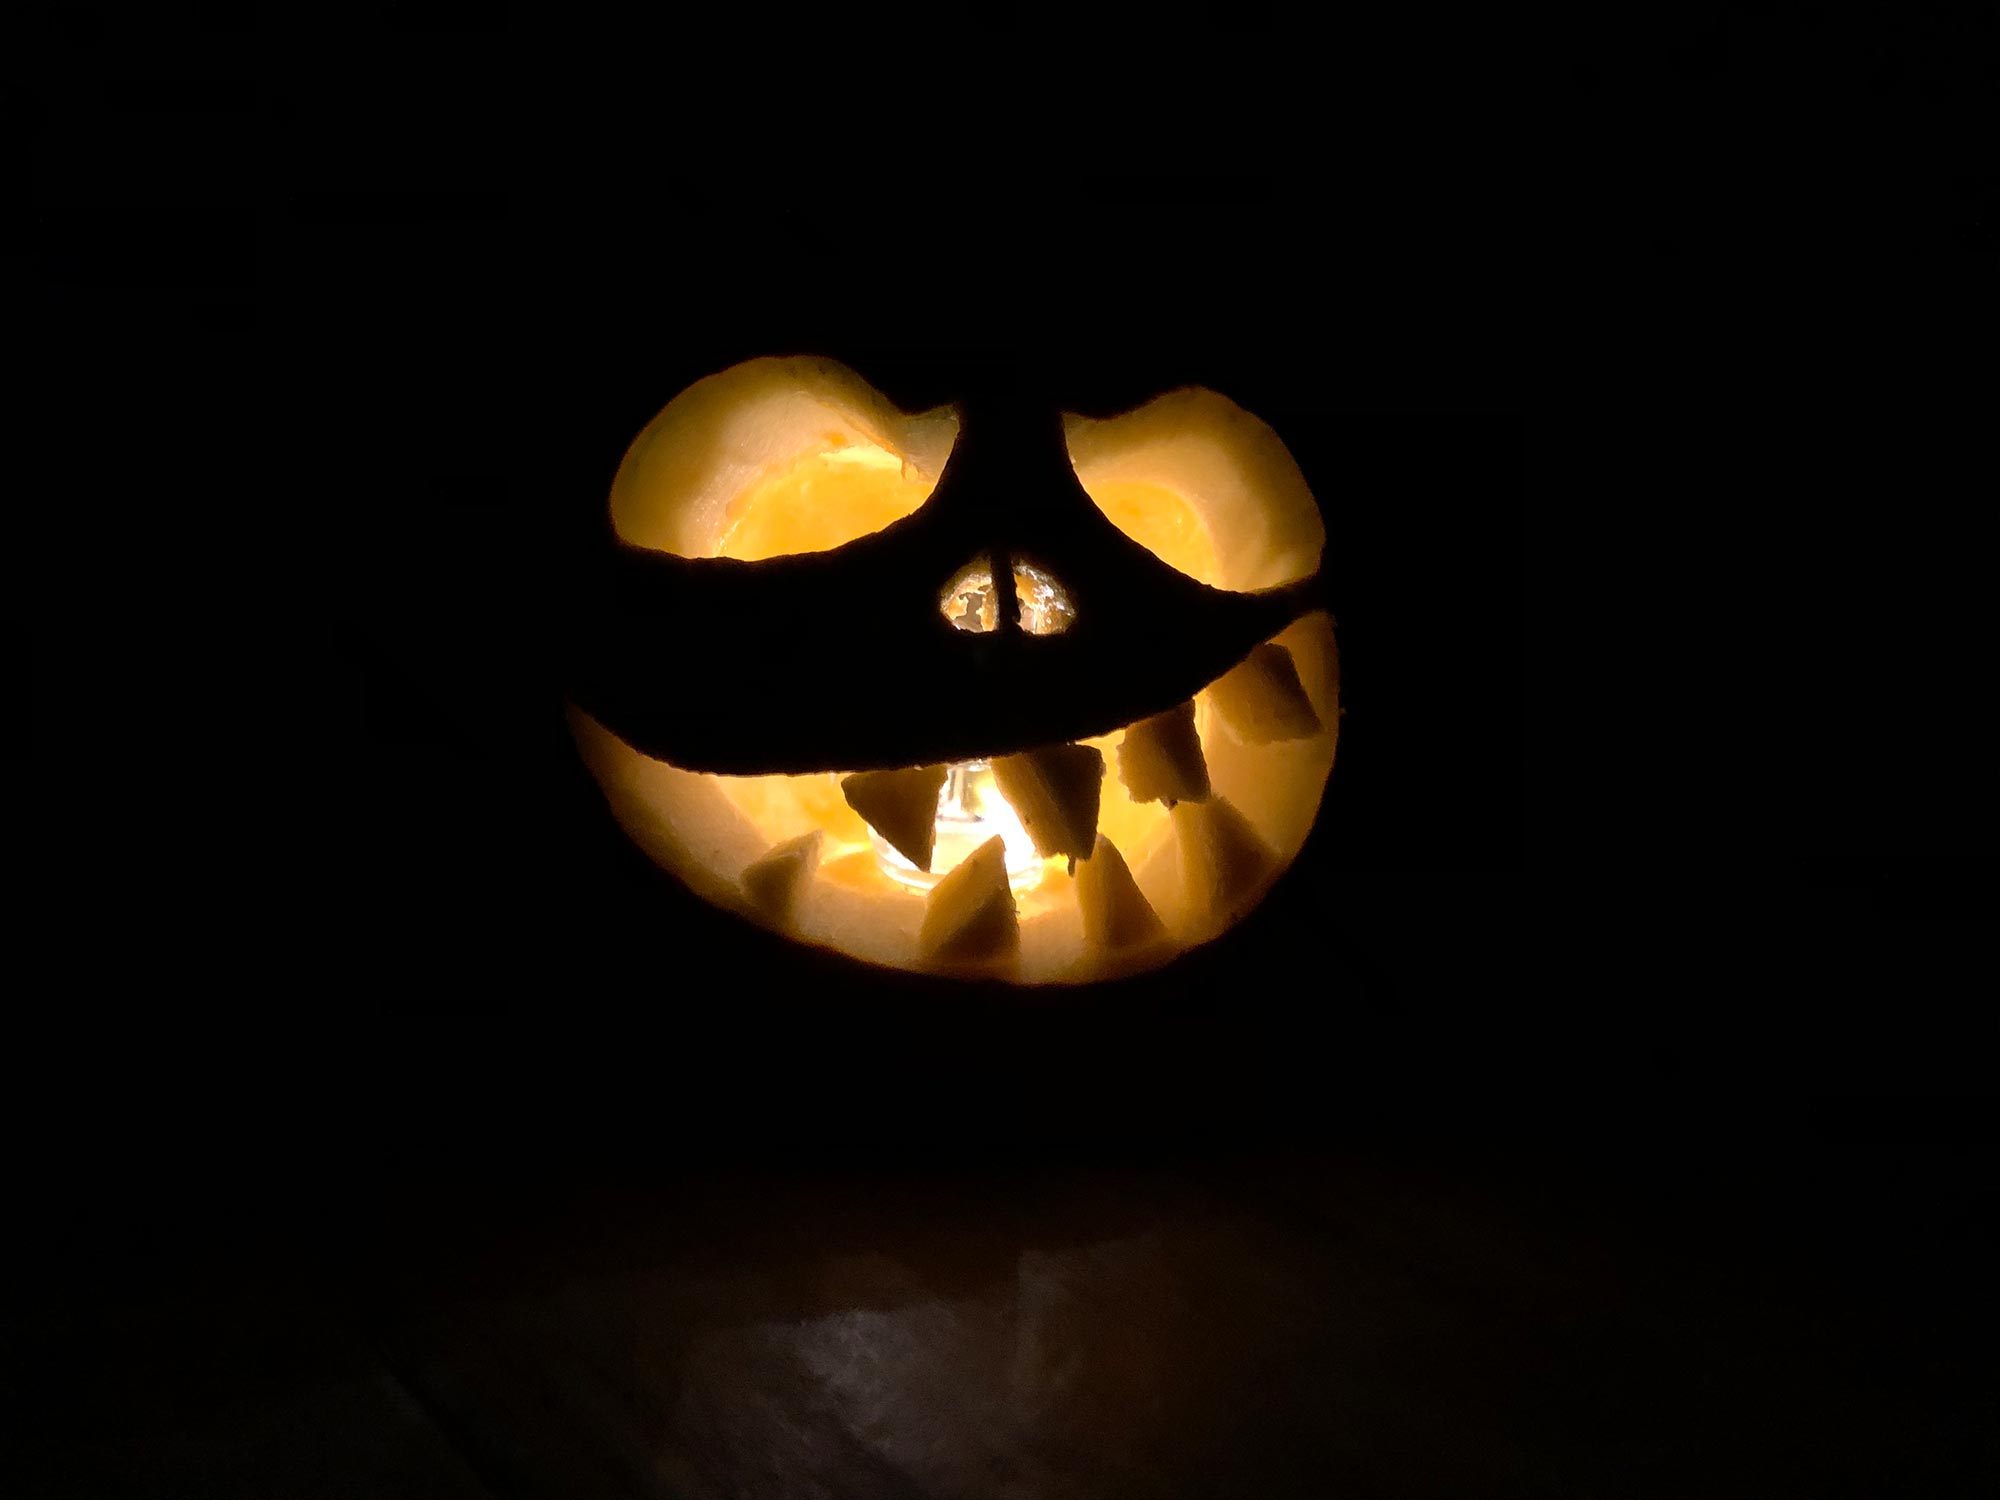 Das Ergebnis: Ein beleuchteter Halloween-Kürbis